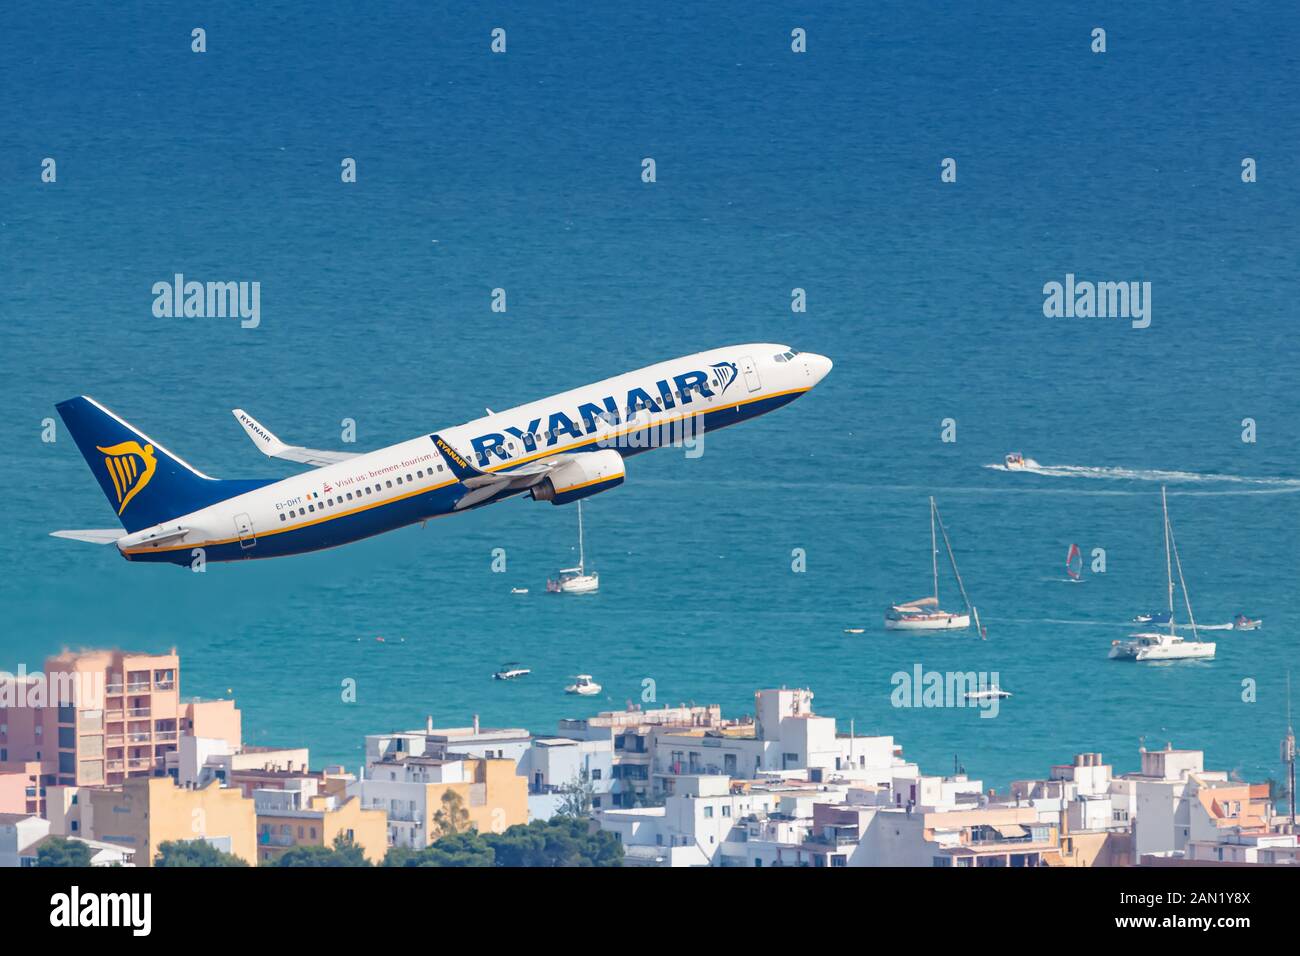 Palma de Mallorca, Spanien - 21. Juli 2018: Flugzeug Ryanair Boeing 737 auf dem Flughafen Palma de Mallorca (PMI) in Spanien. Boeing ist ein Flugzeughersteller Stockfoto